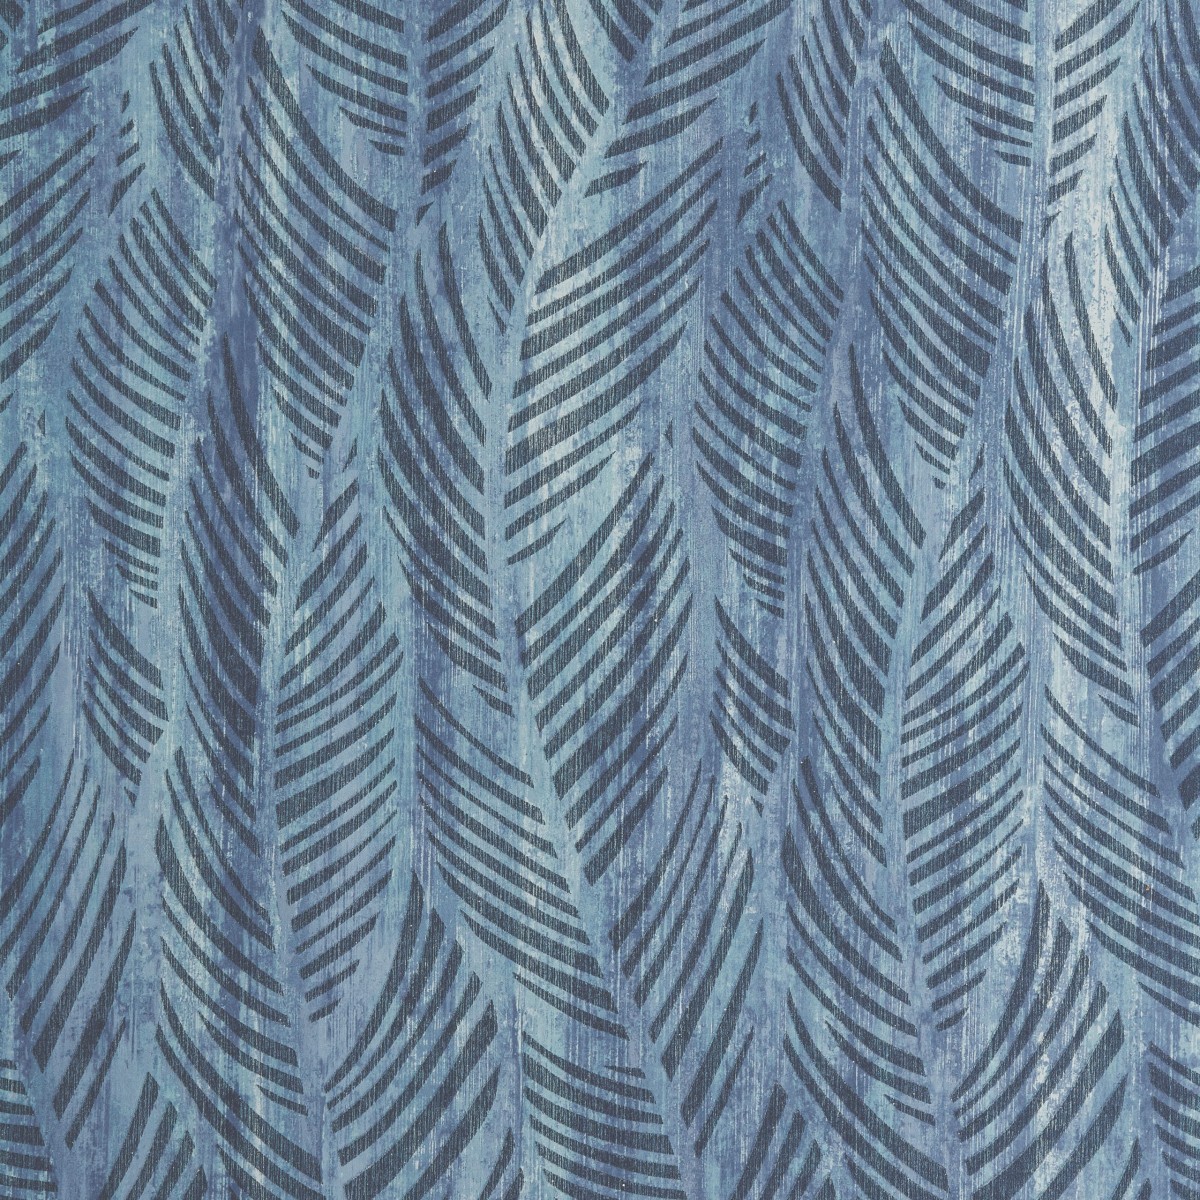 Tapet Bramble, Blue Dusk Luxury Bead, 1838 Wallcoverings, 5.3mp / rola, Tapet living 